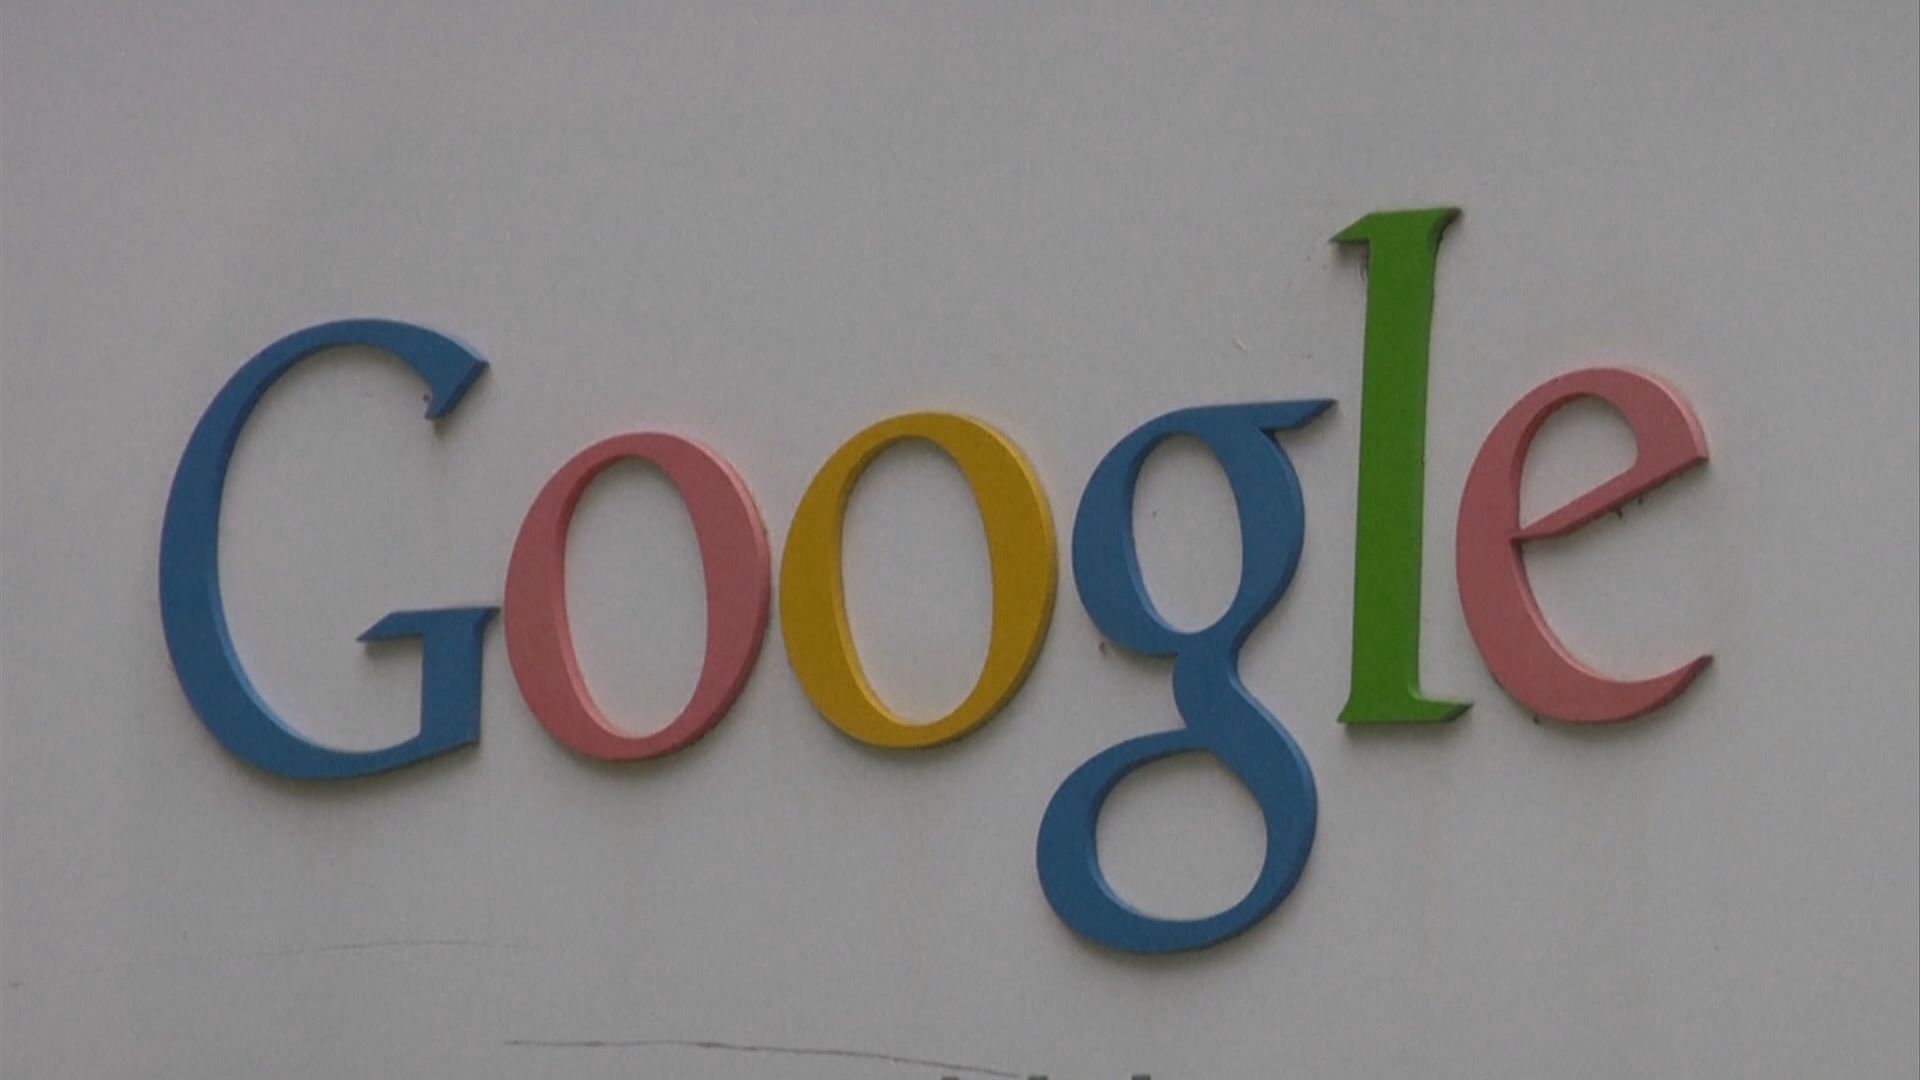 美國司法部對Google提出反壟斷法訴訟